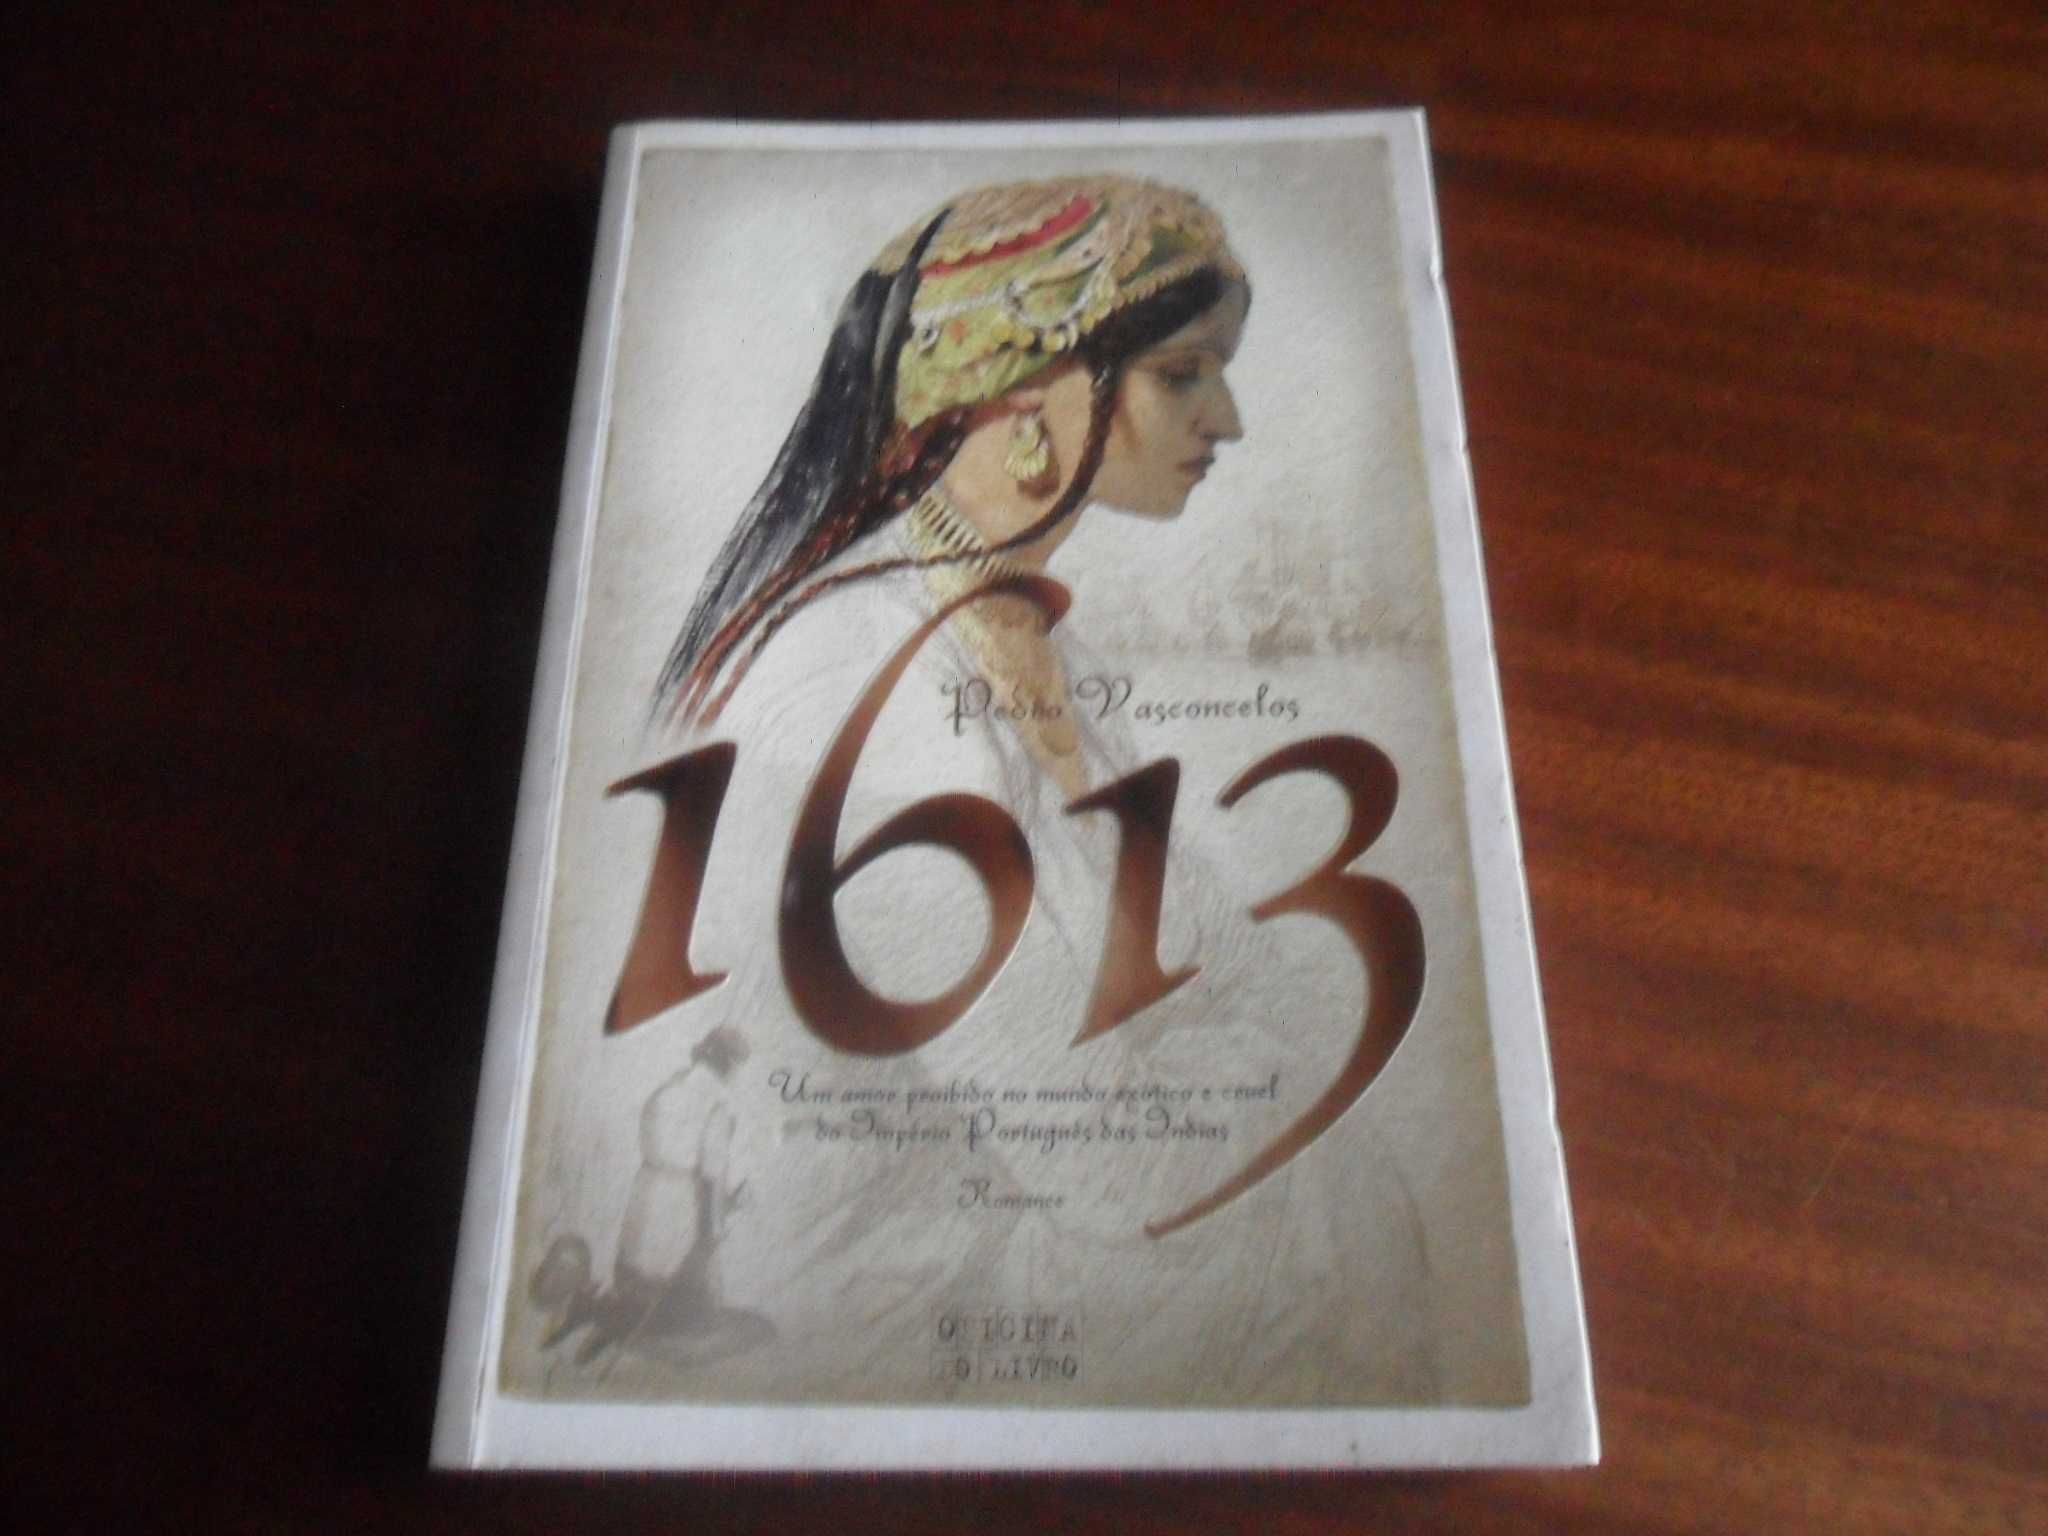 "1613" de Pedro Vasconcelos - 1ª Edição de 2005